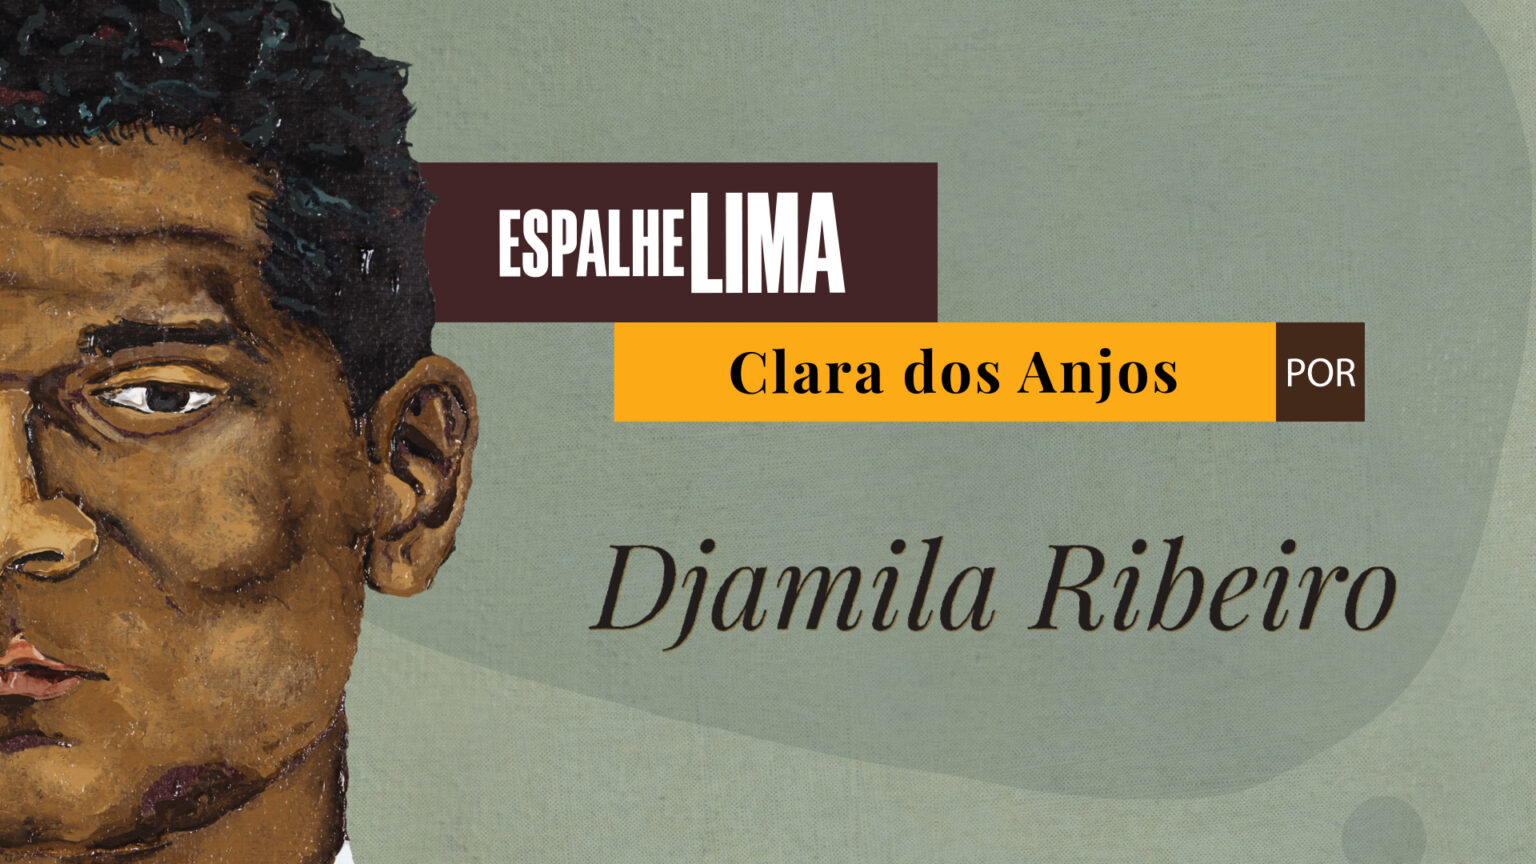 ESPALHE LIMA | PROJETO PARA REDES SOCIAIS